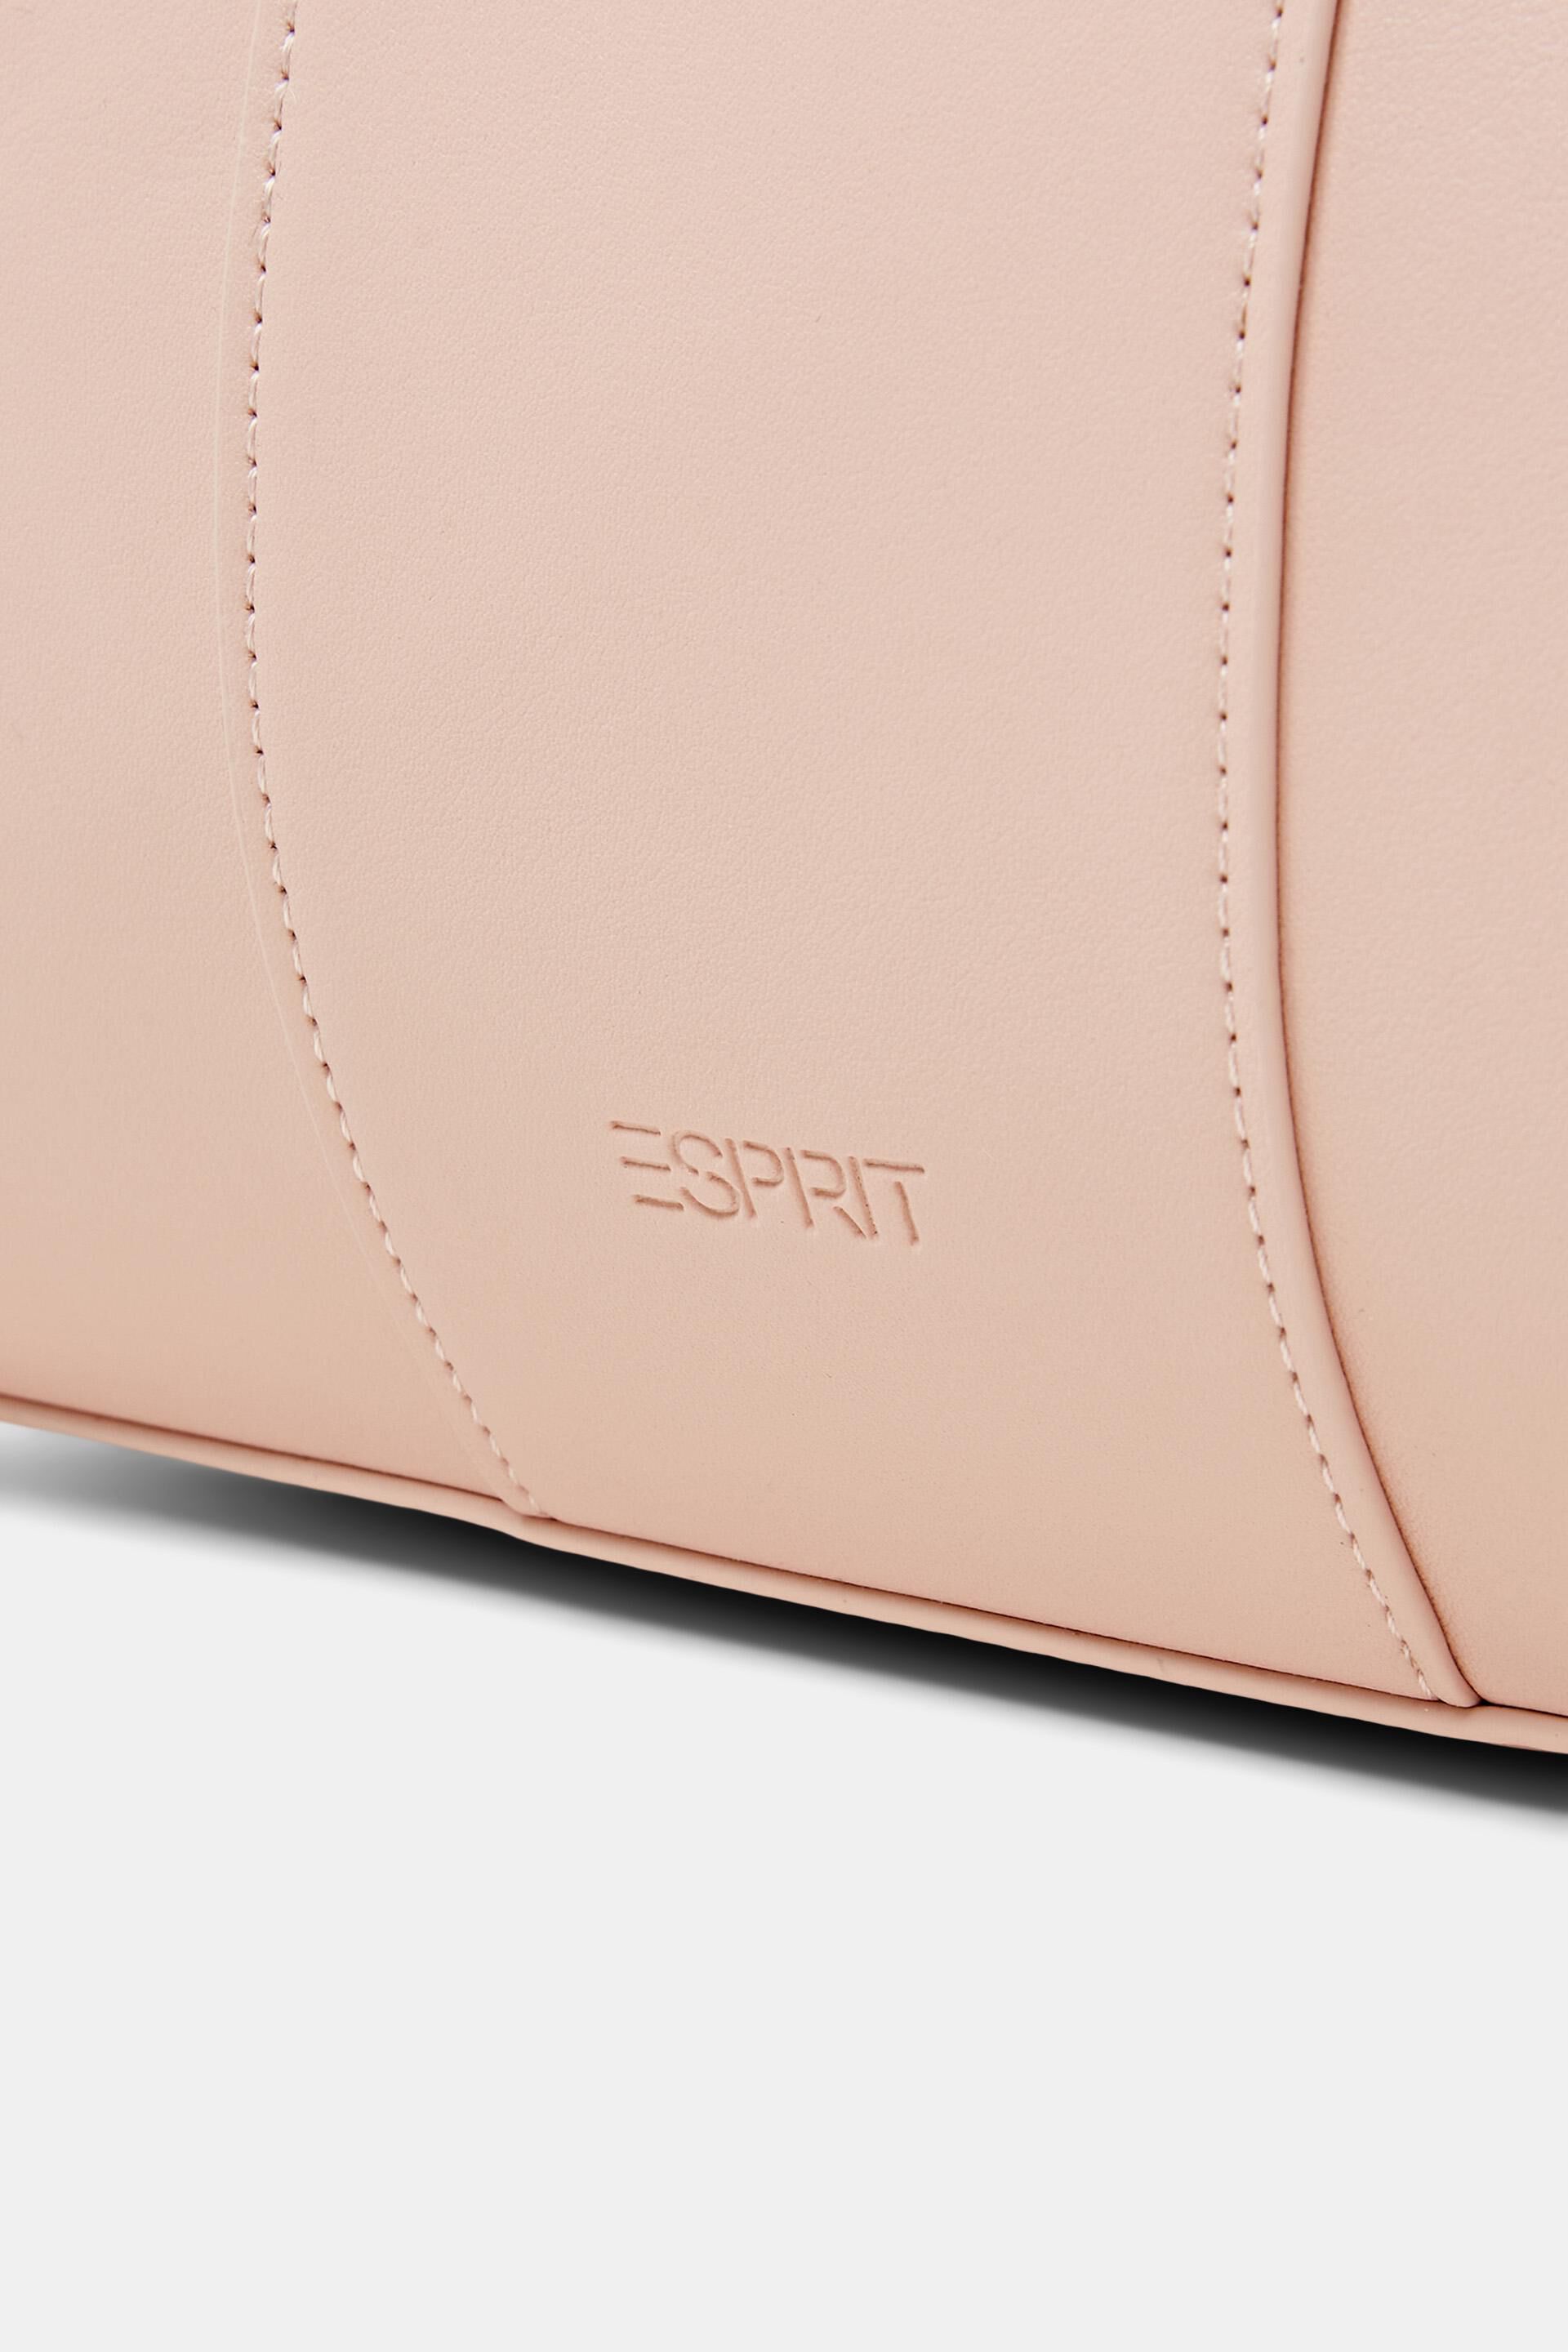 Esprit Online Store Umhängetasche mit Drehverschluss